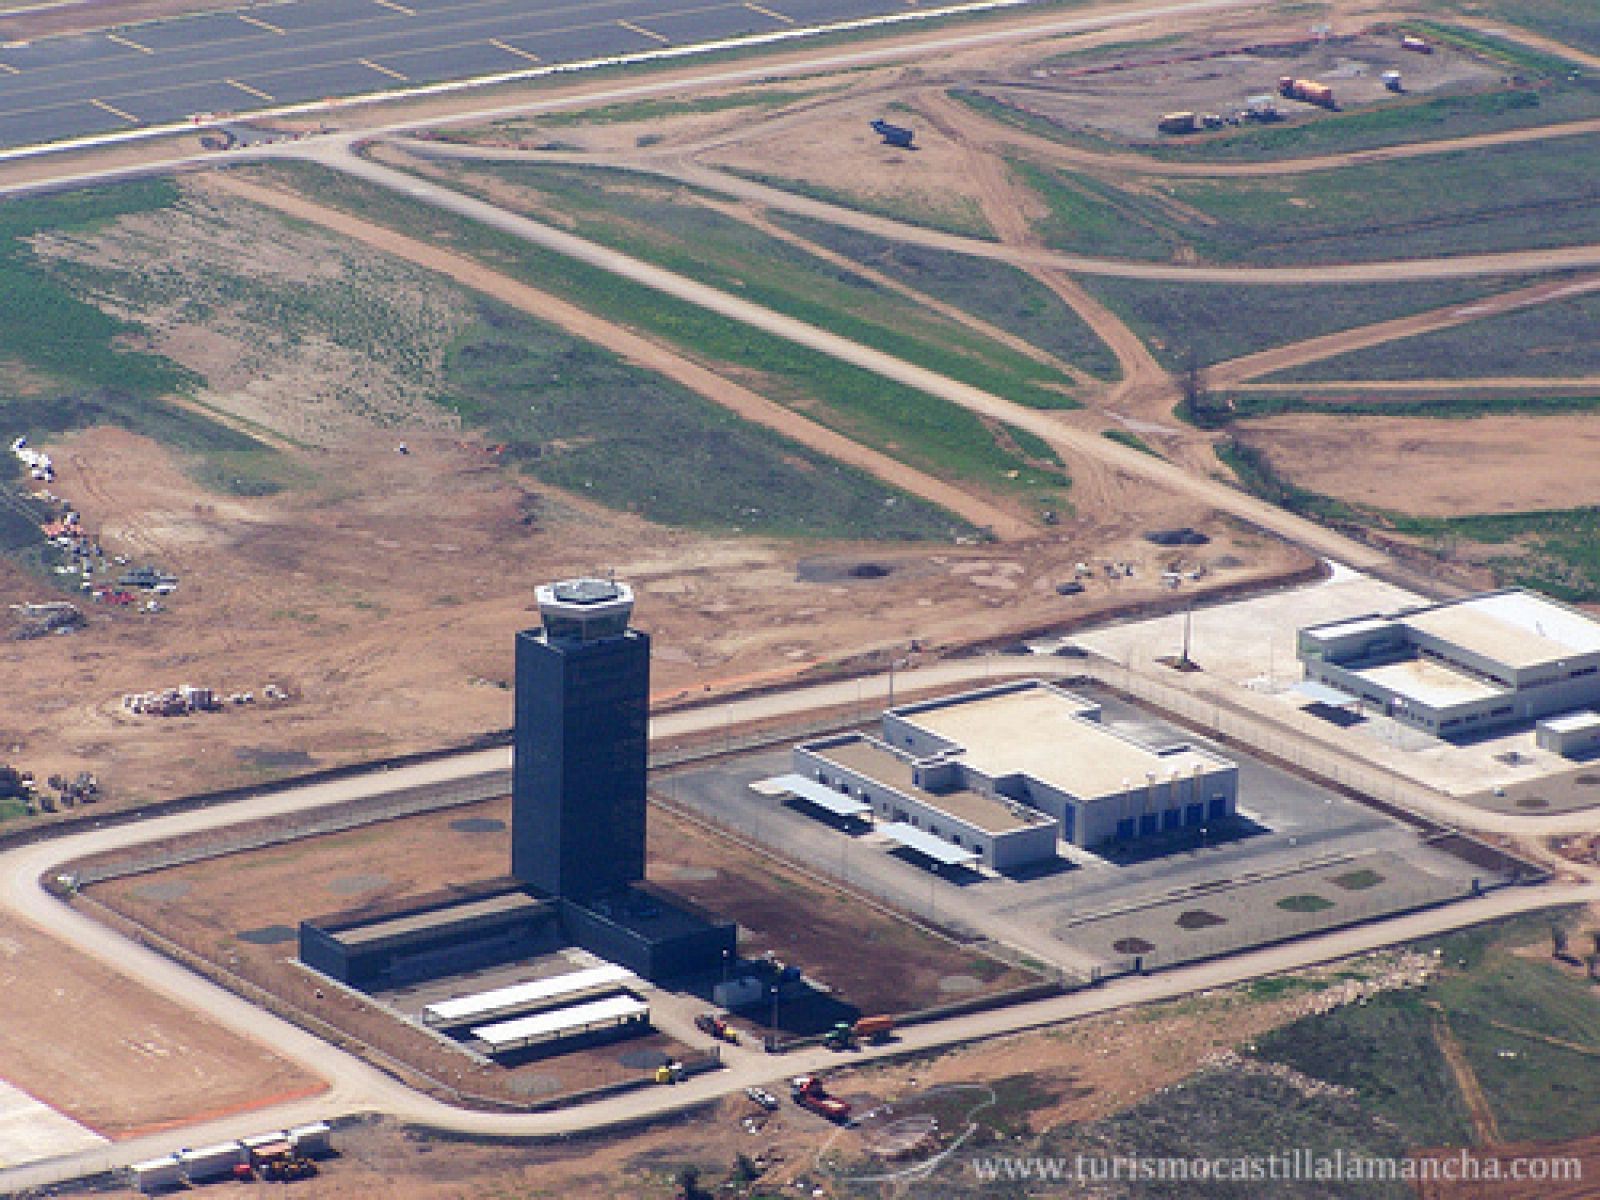 Imagen aérea del aeropuerto de Ciudad Real publicada por la web oficial de Turismo de Castilla-La Mancha.